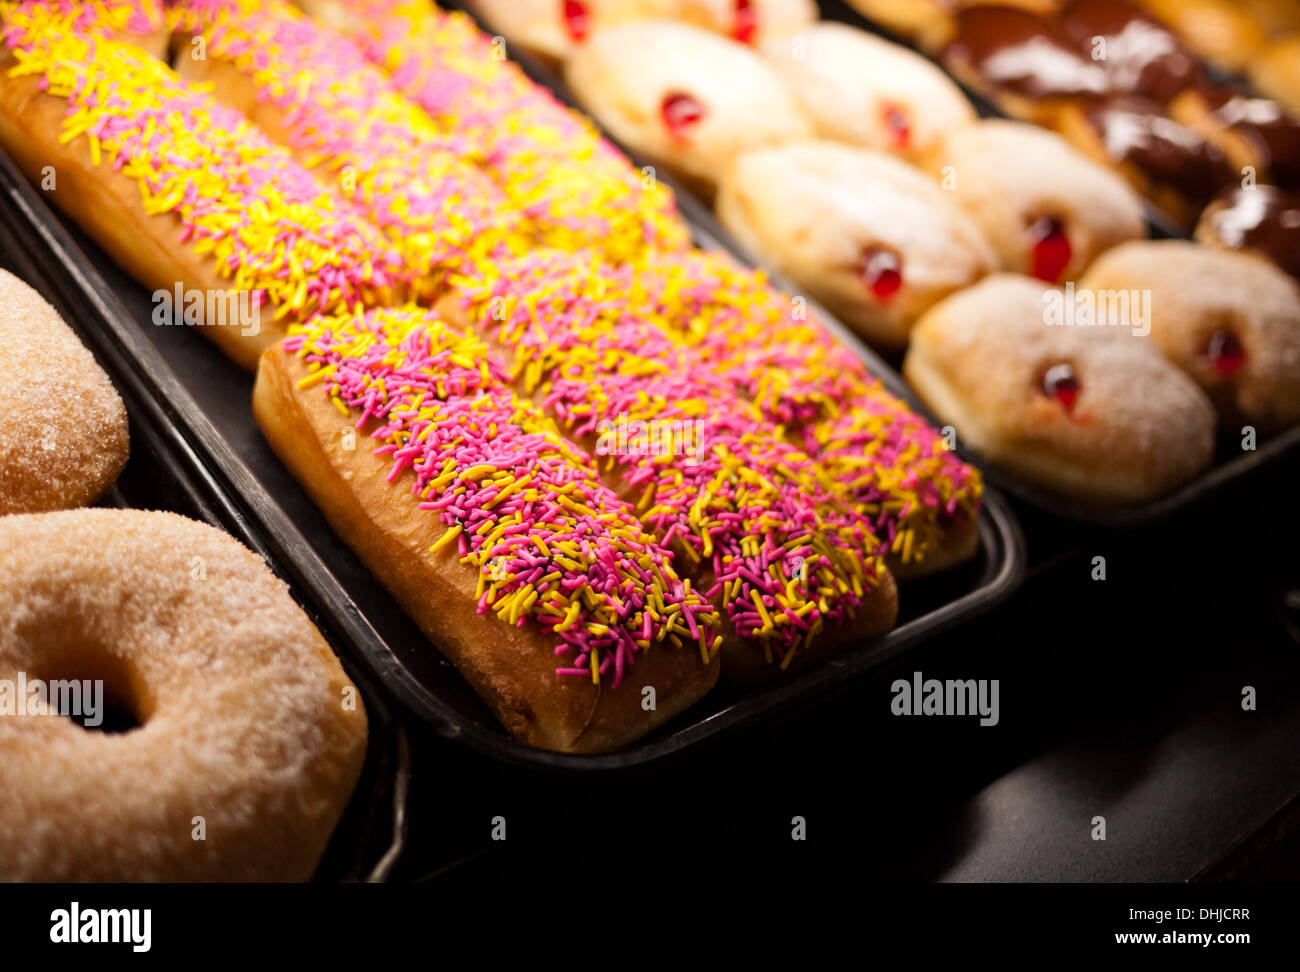 Streuen Sie Donuts, Zucker Donuts und pulverisierte gefüllte Krapfen in einem Bäckerei-Fenster. Stockfoto